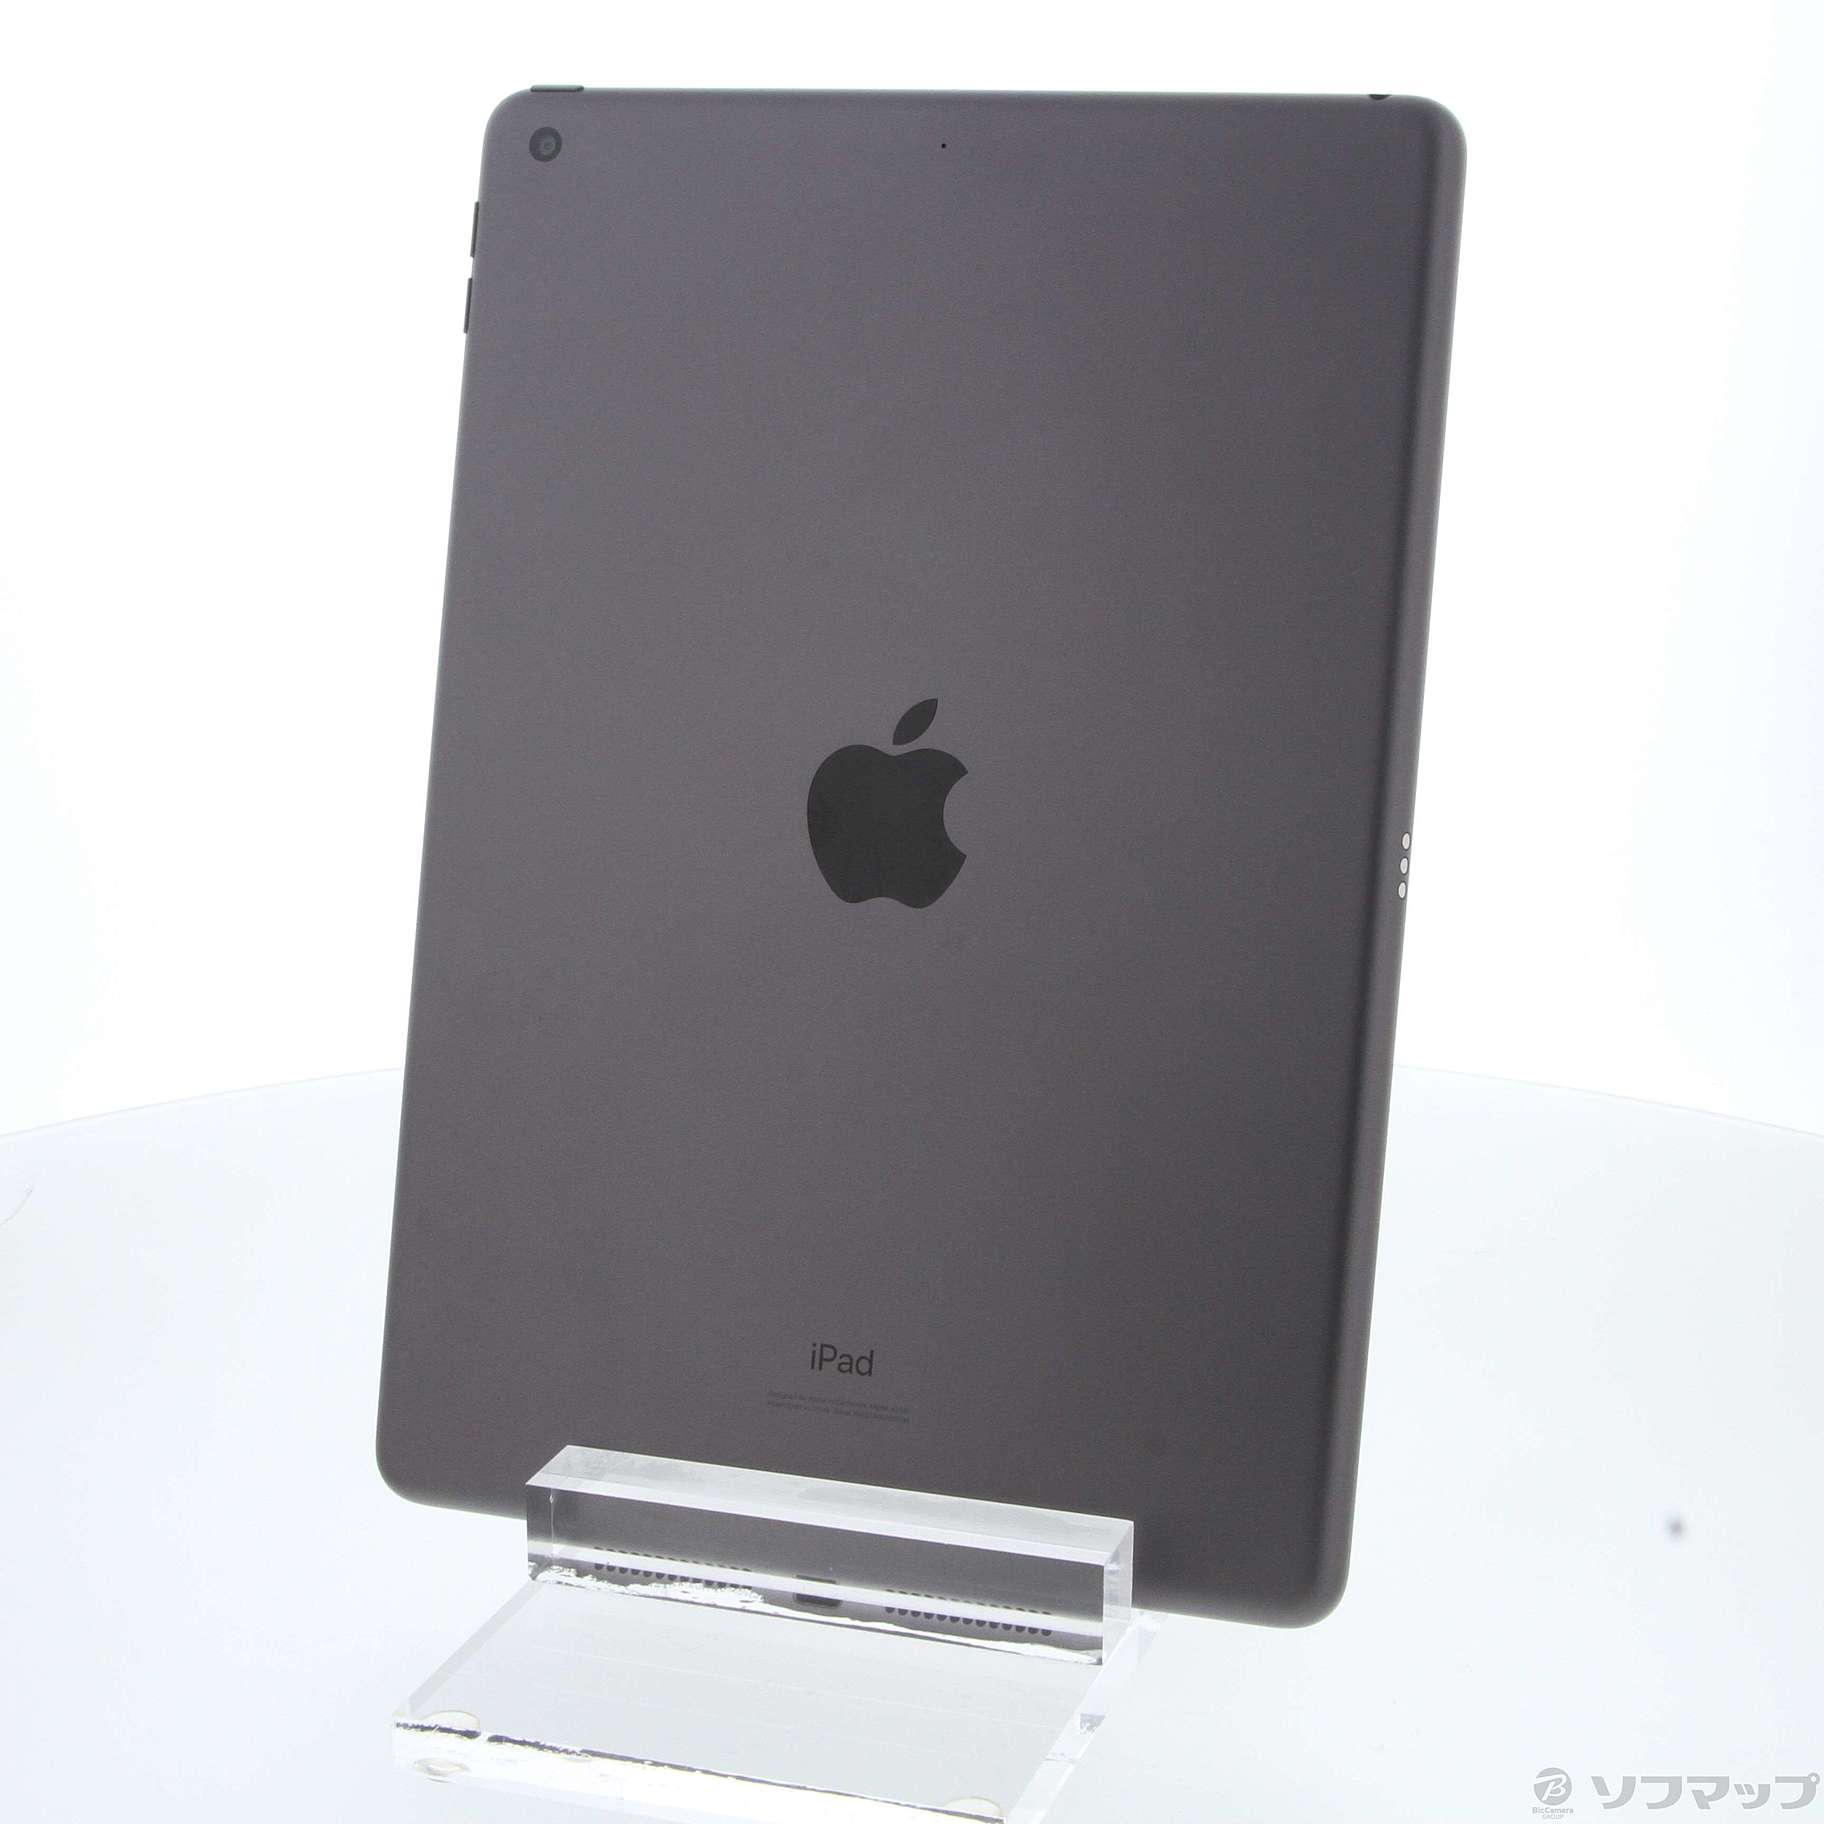 (中古)Apple iPad 第7世代 32GB スペースグレイ MW742J/A Wi-Fi(251-ud)